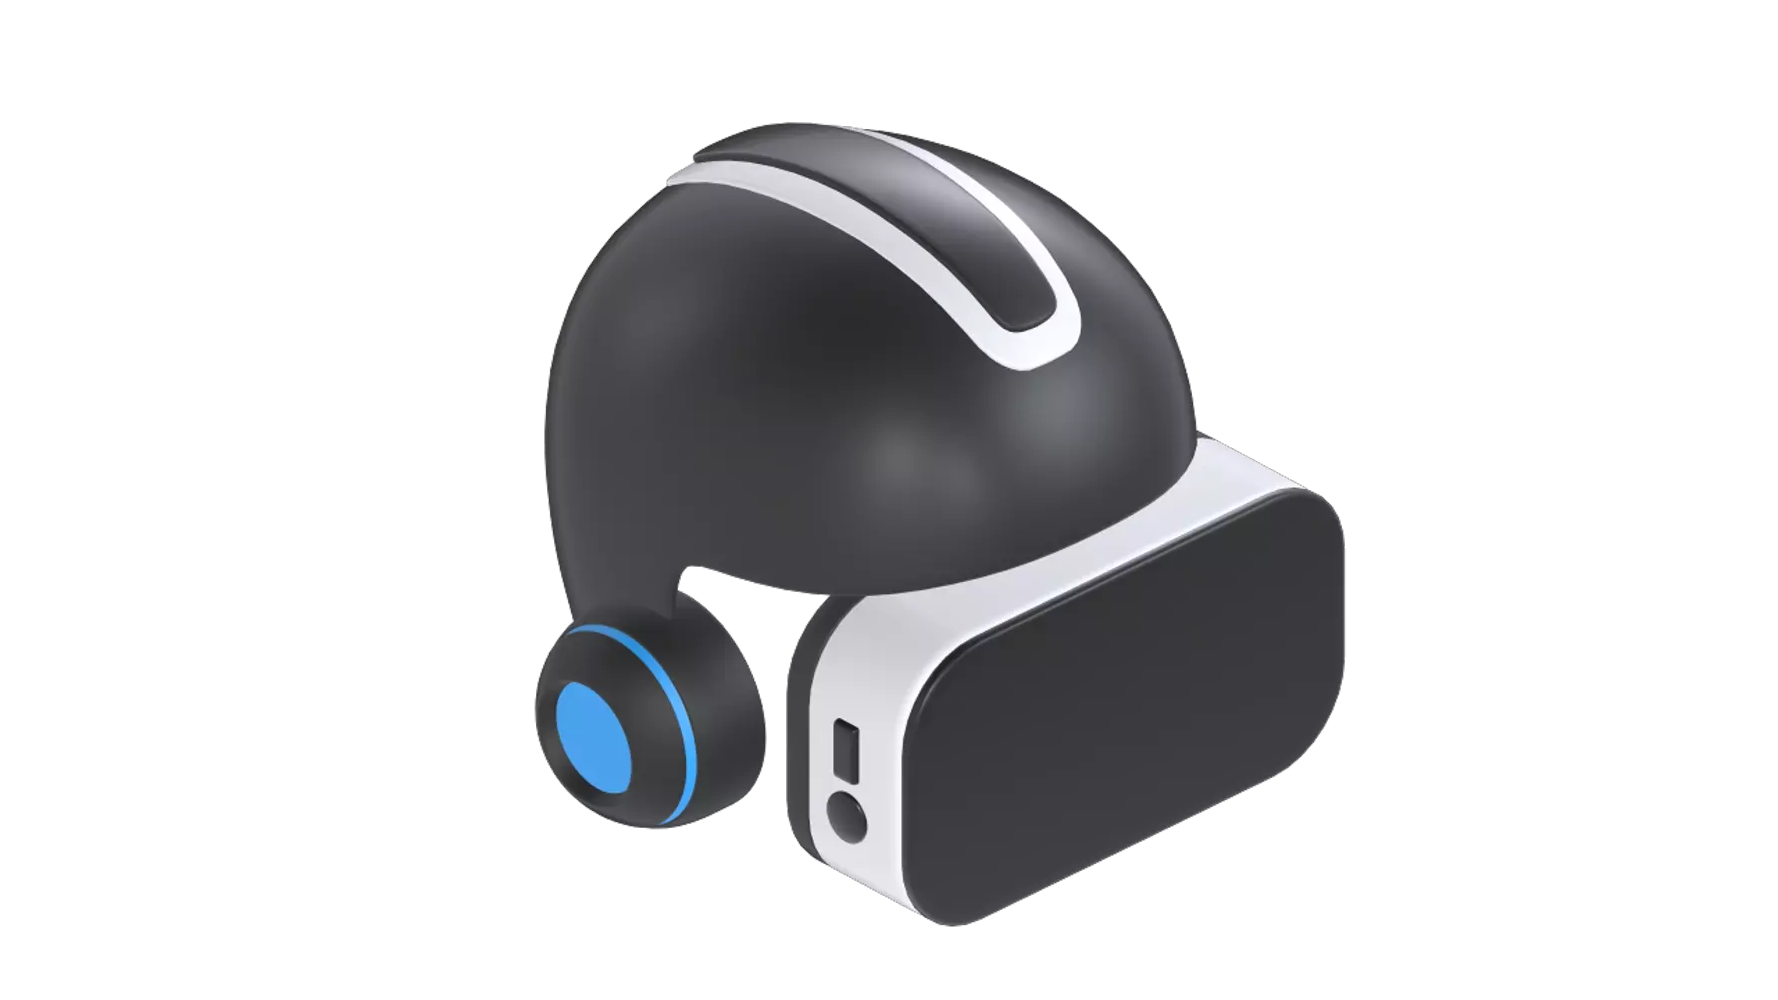 VR Helmet 3D Graphic